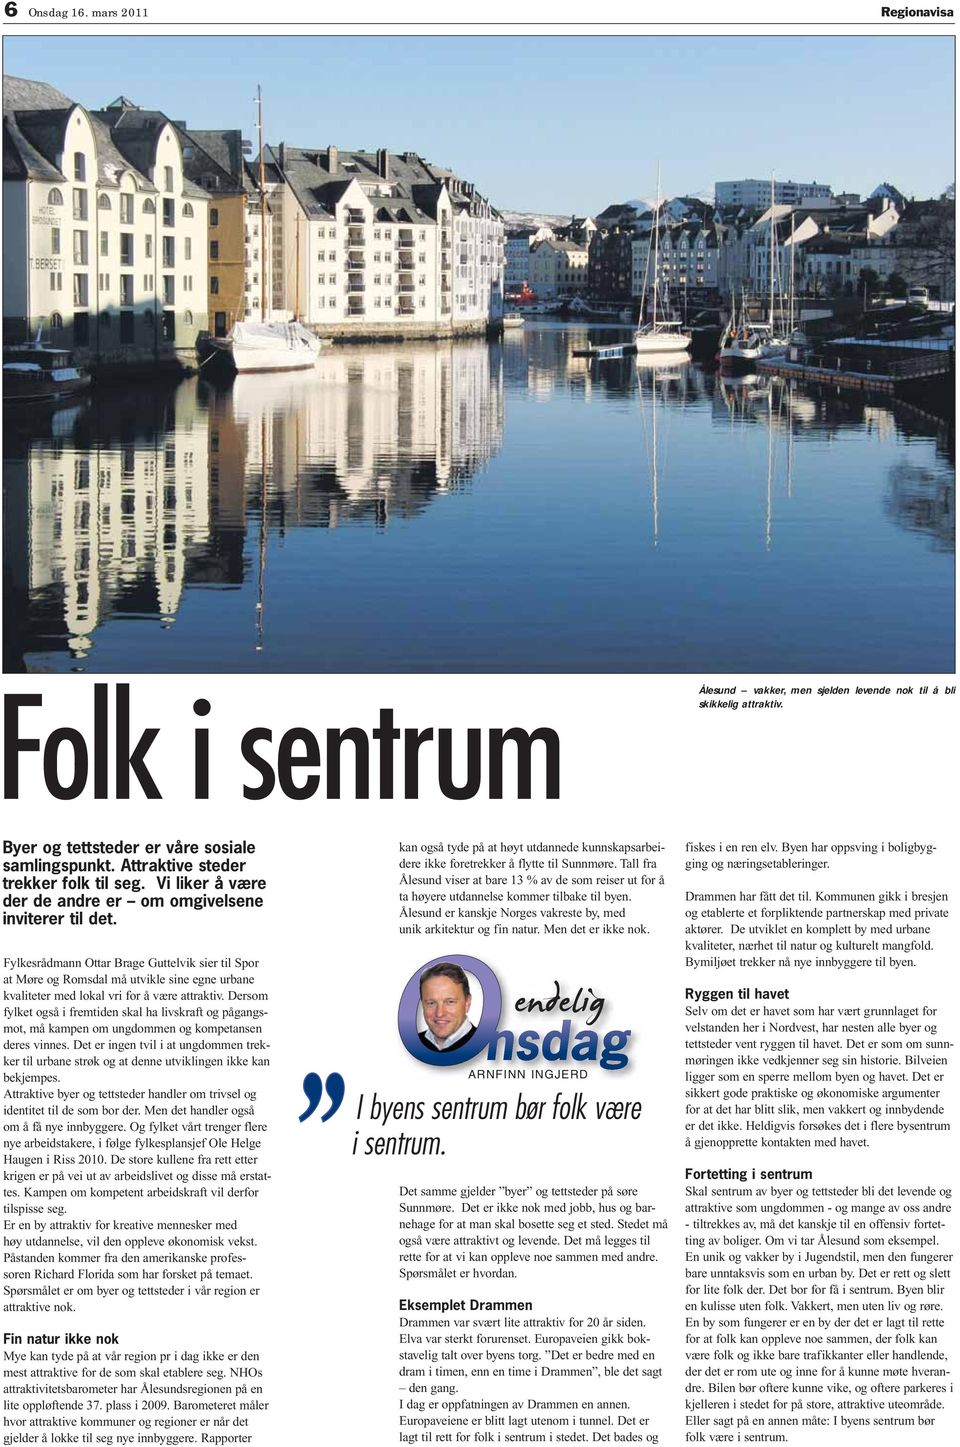 Fylkesrådmann Ottar Brage Guttelvik sier til por at Møre og omsdal må utvikle sine egne urbane kvaliteter med lokal vri for å være attraktiv.